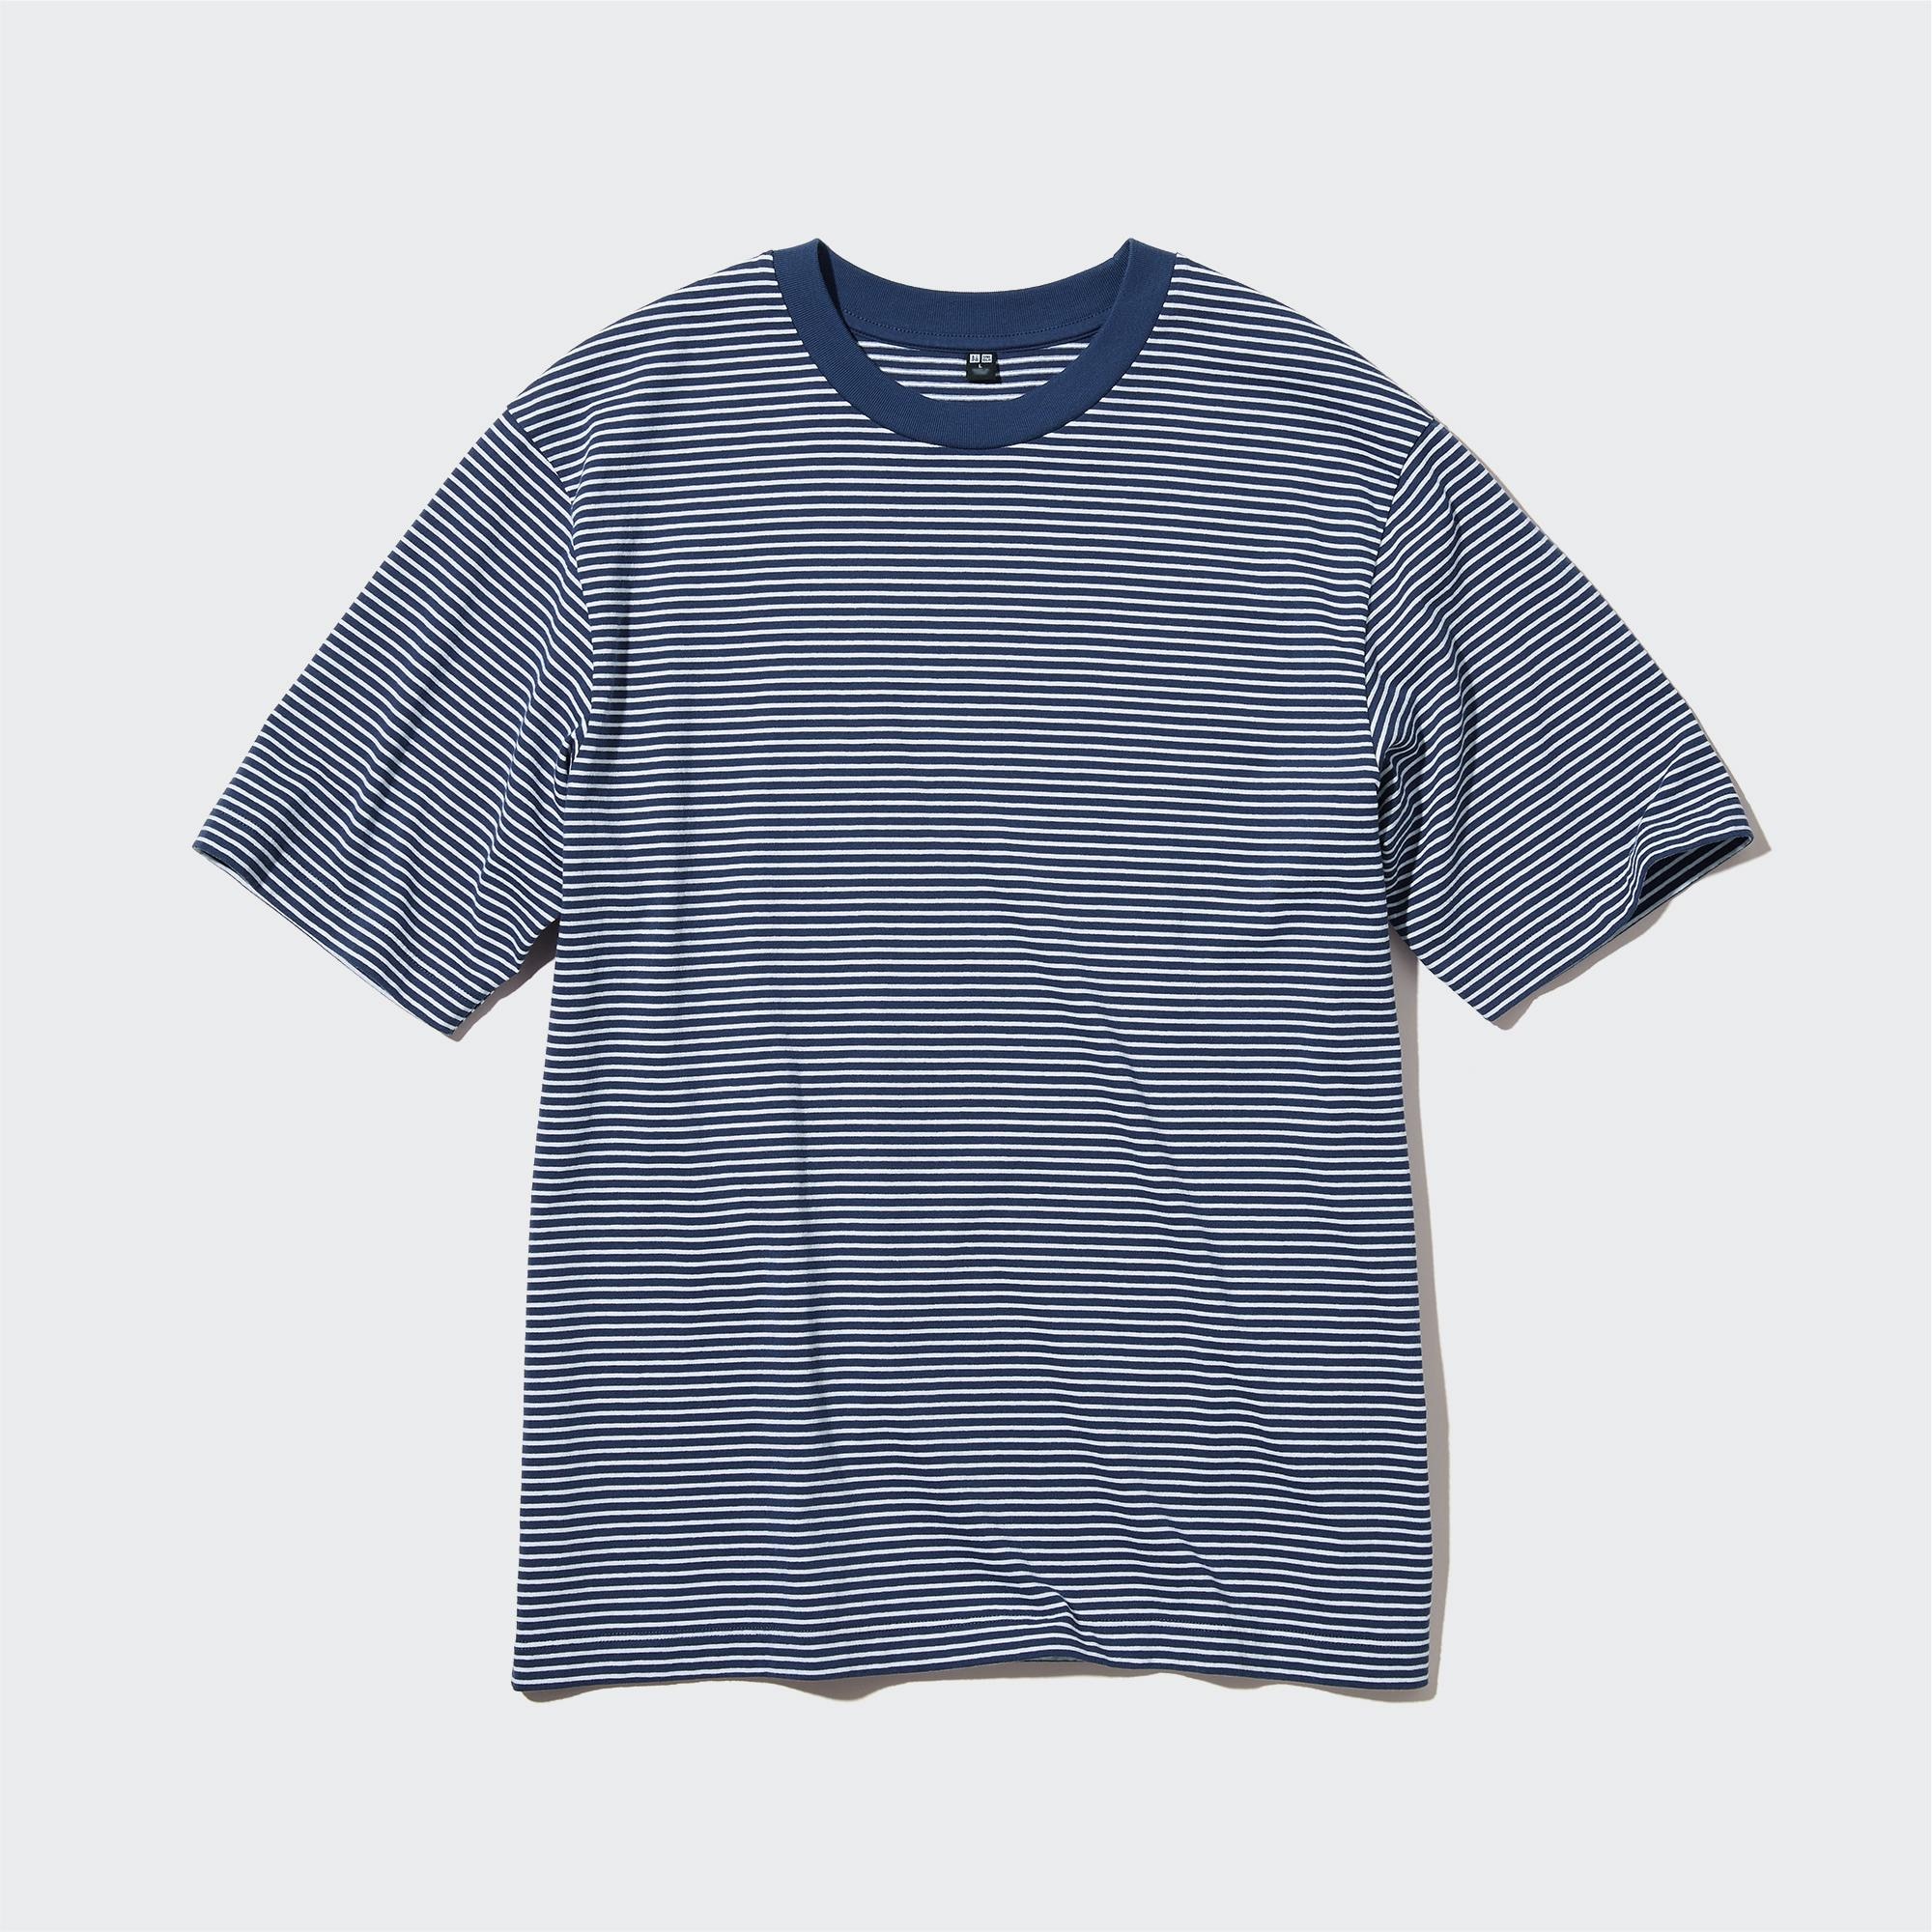 ユニクロ公式 | オーバーサイズボーダーTシャツ（5分袖）のレビュー